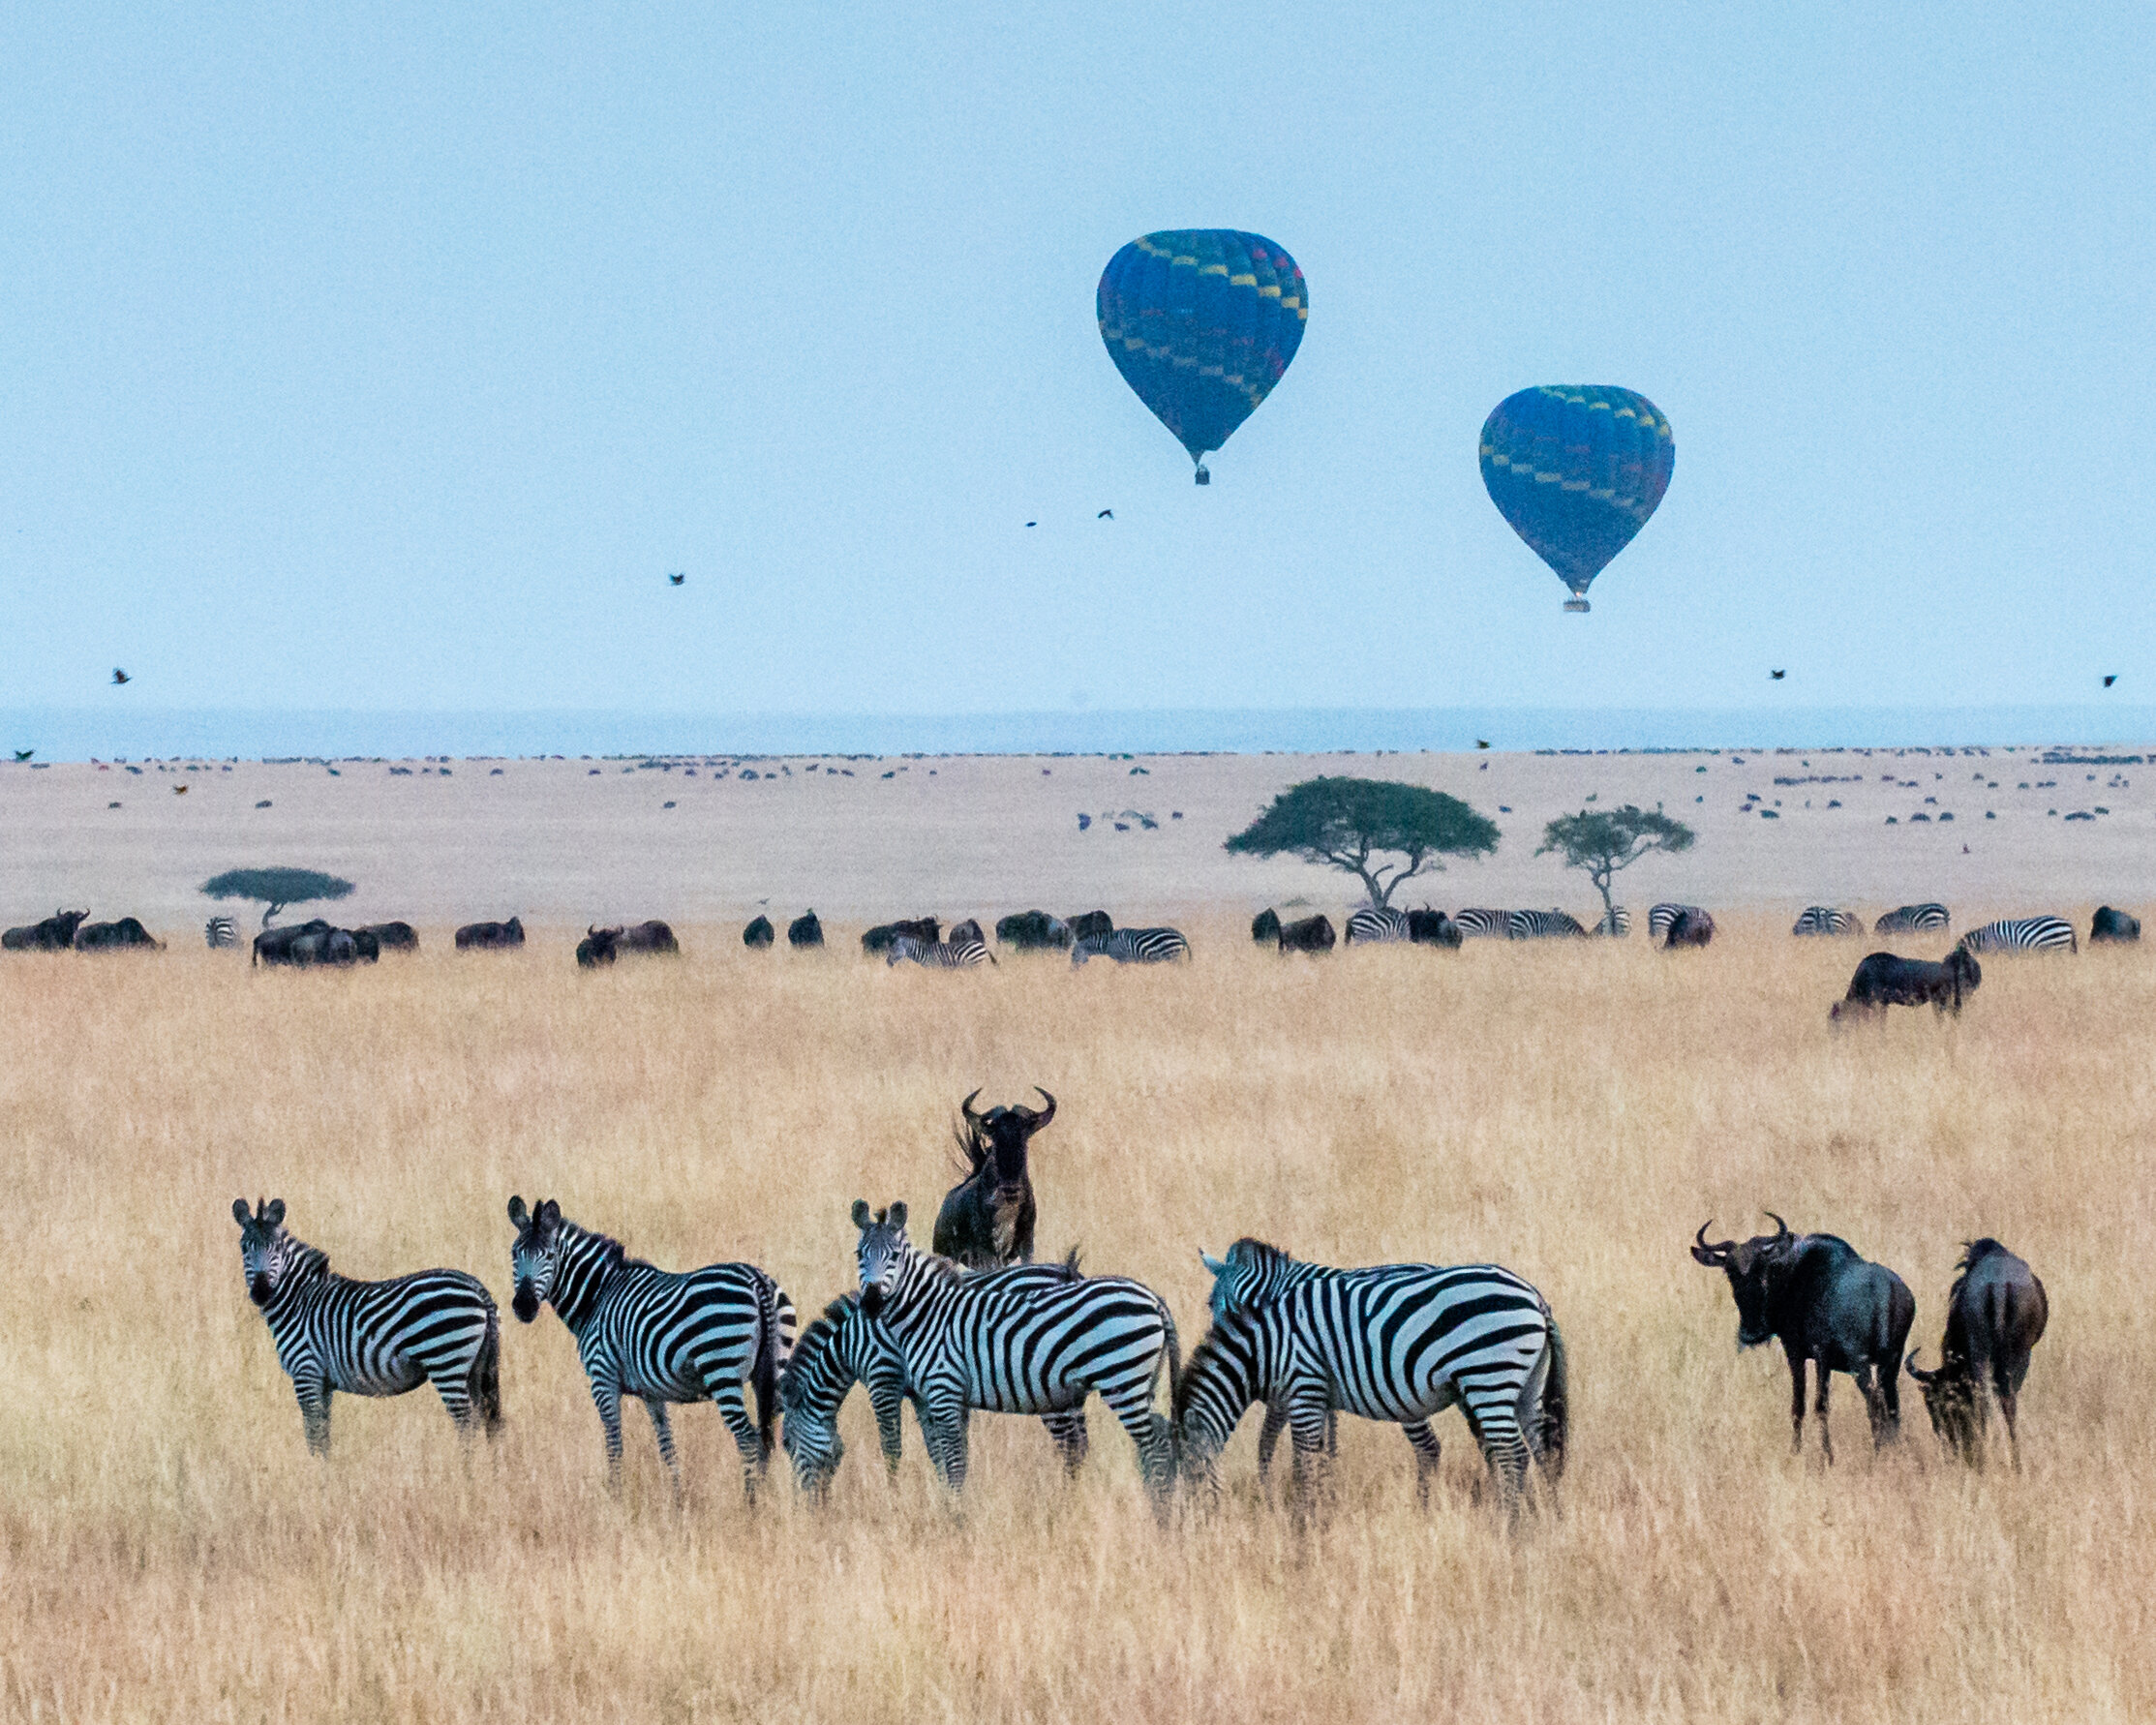 Hot Air Ballooning in the Serengeti